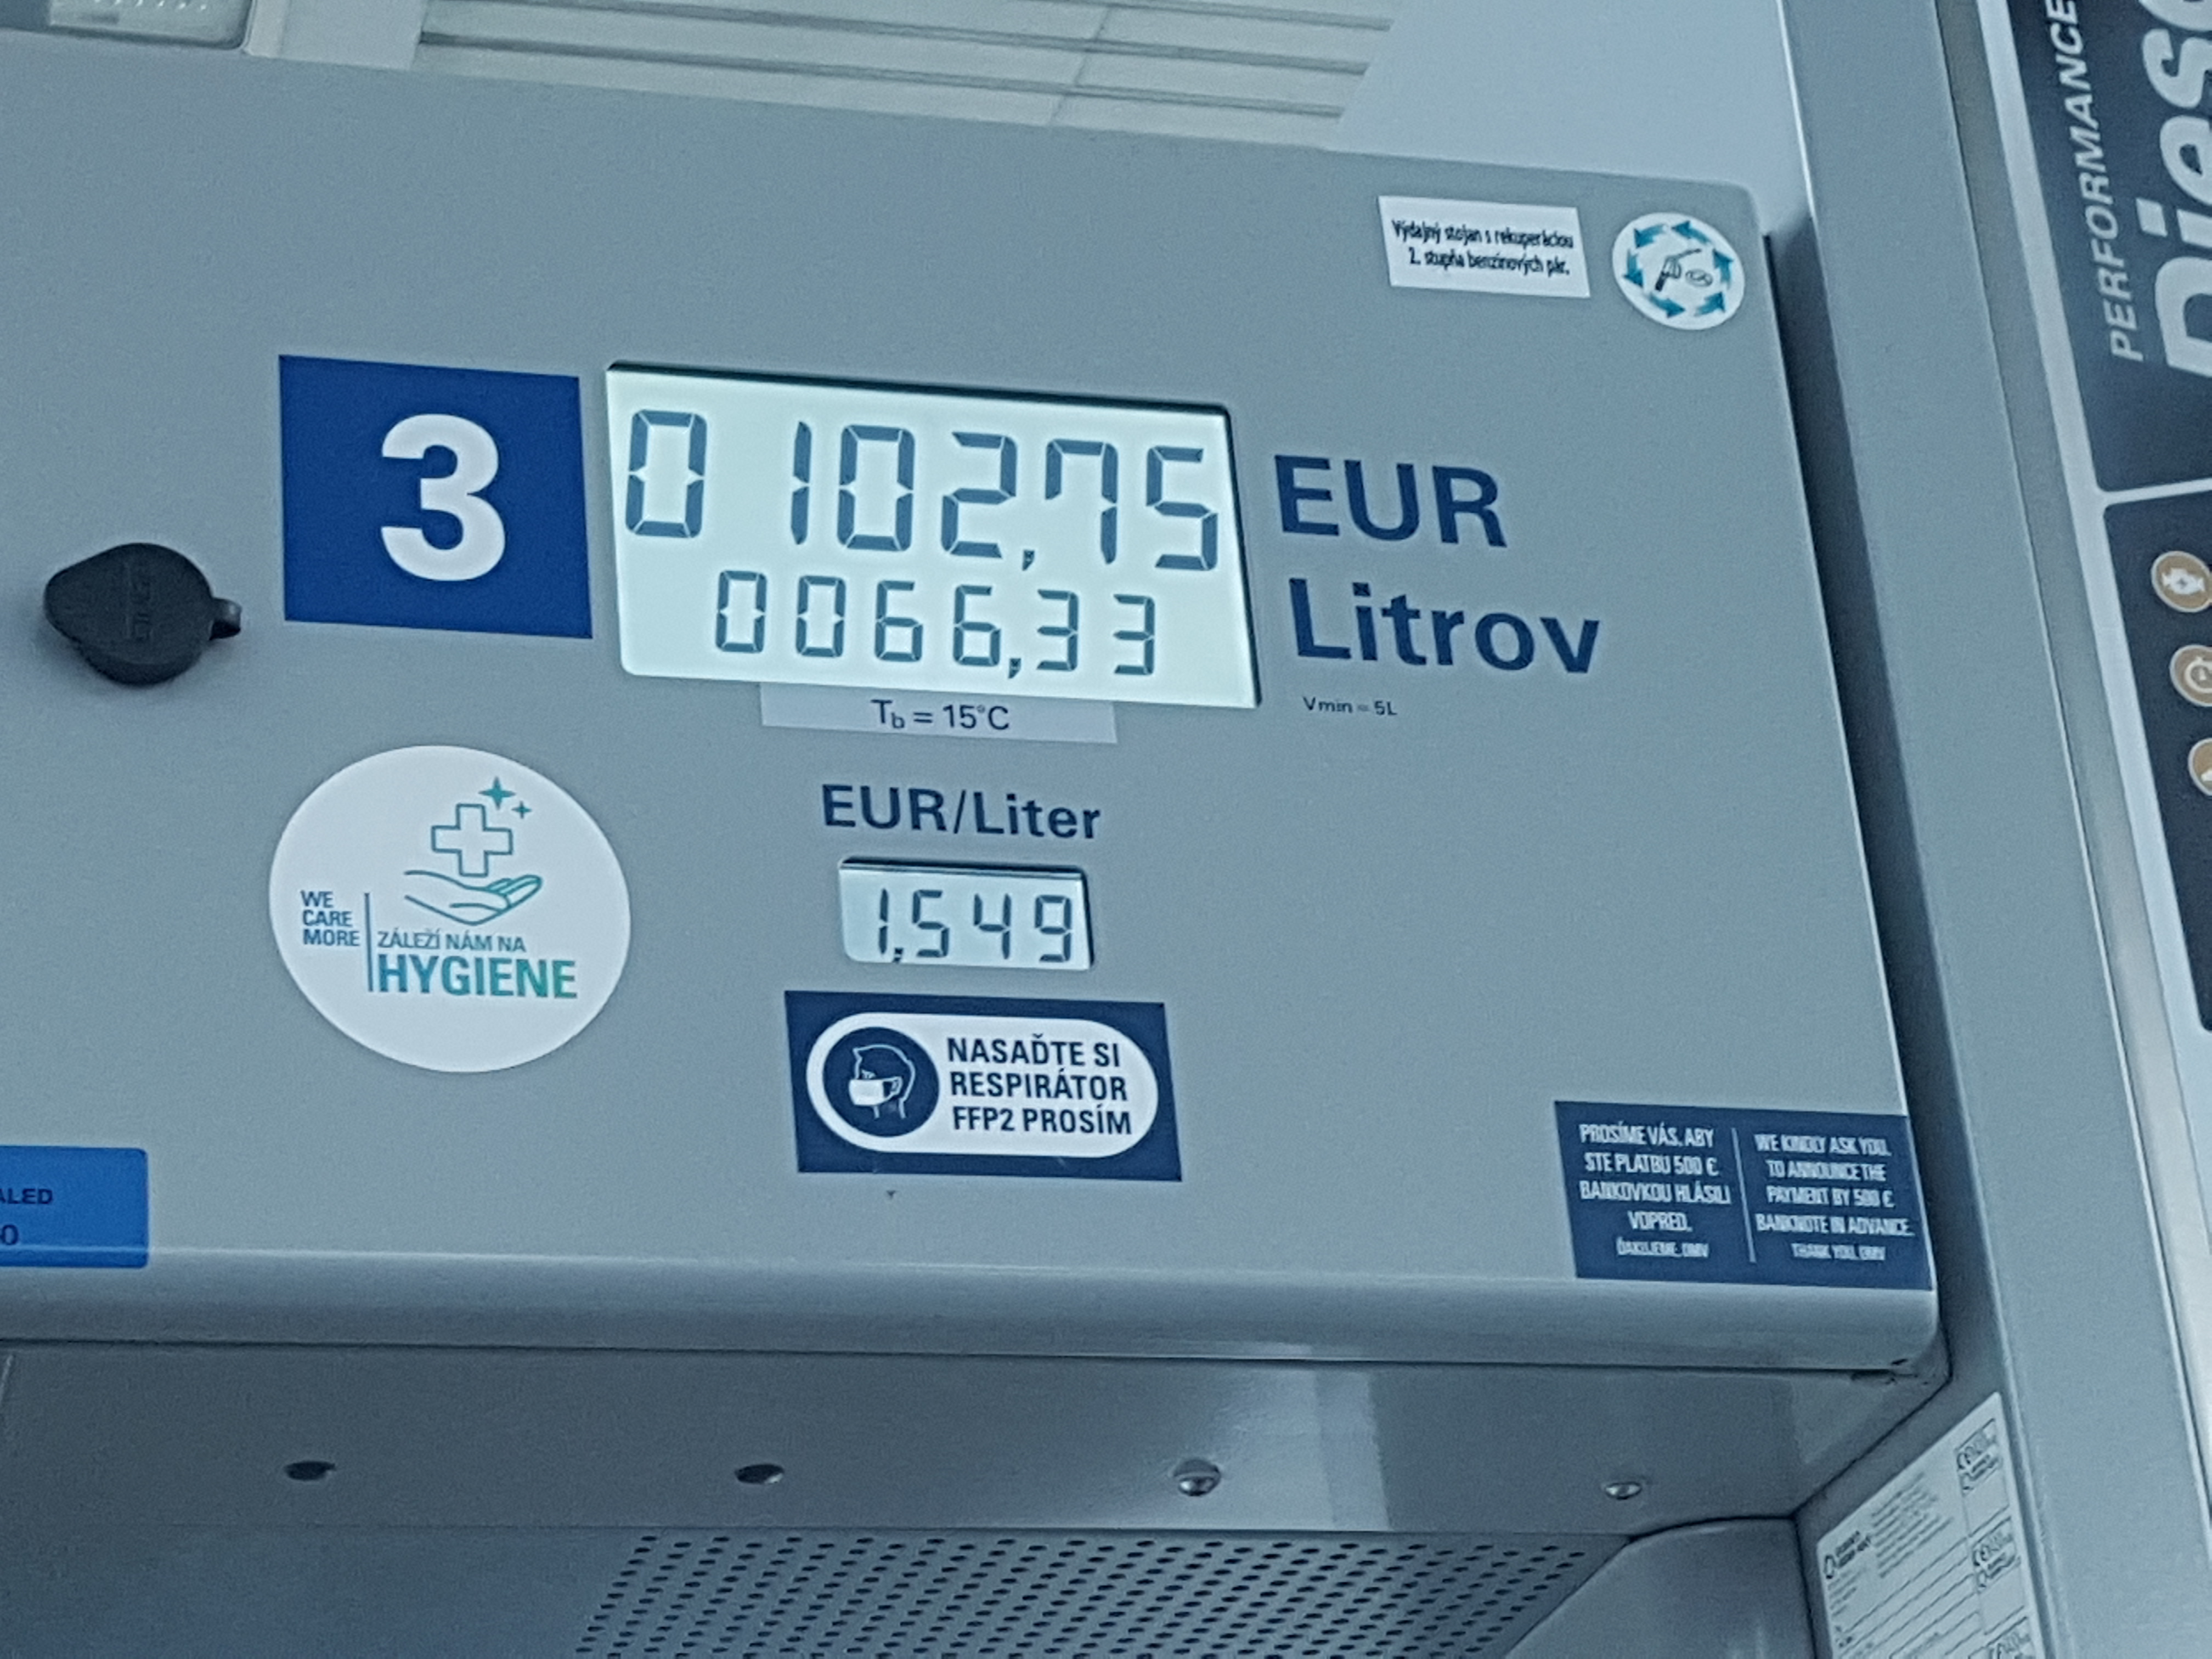 Tankovanie pohonnych hmôt na Slovensku (ceny 4.2.2022)